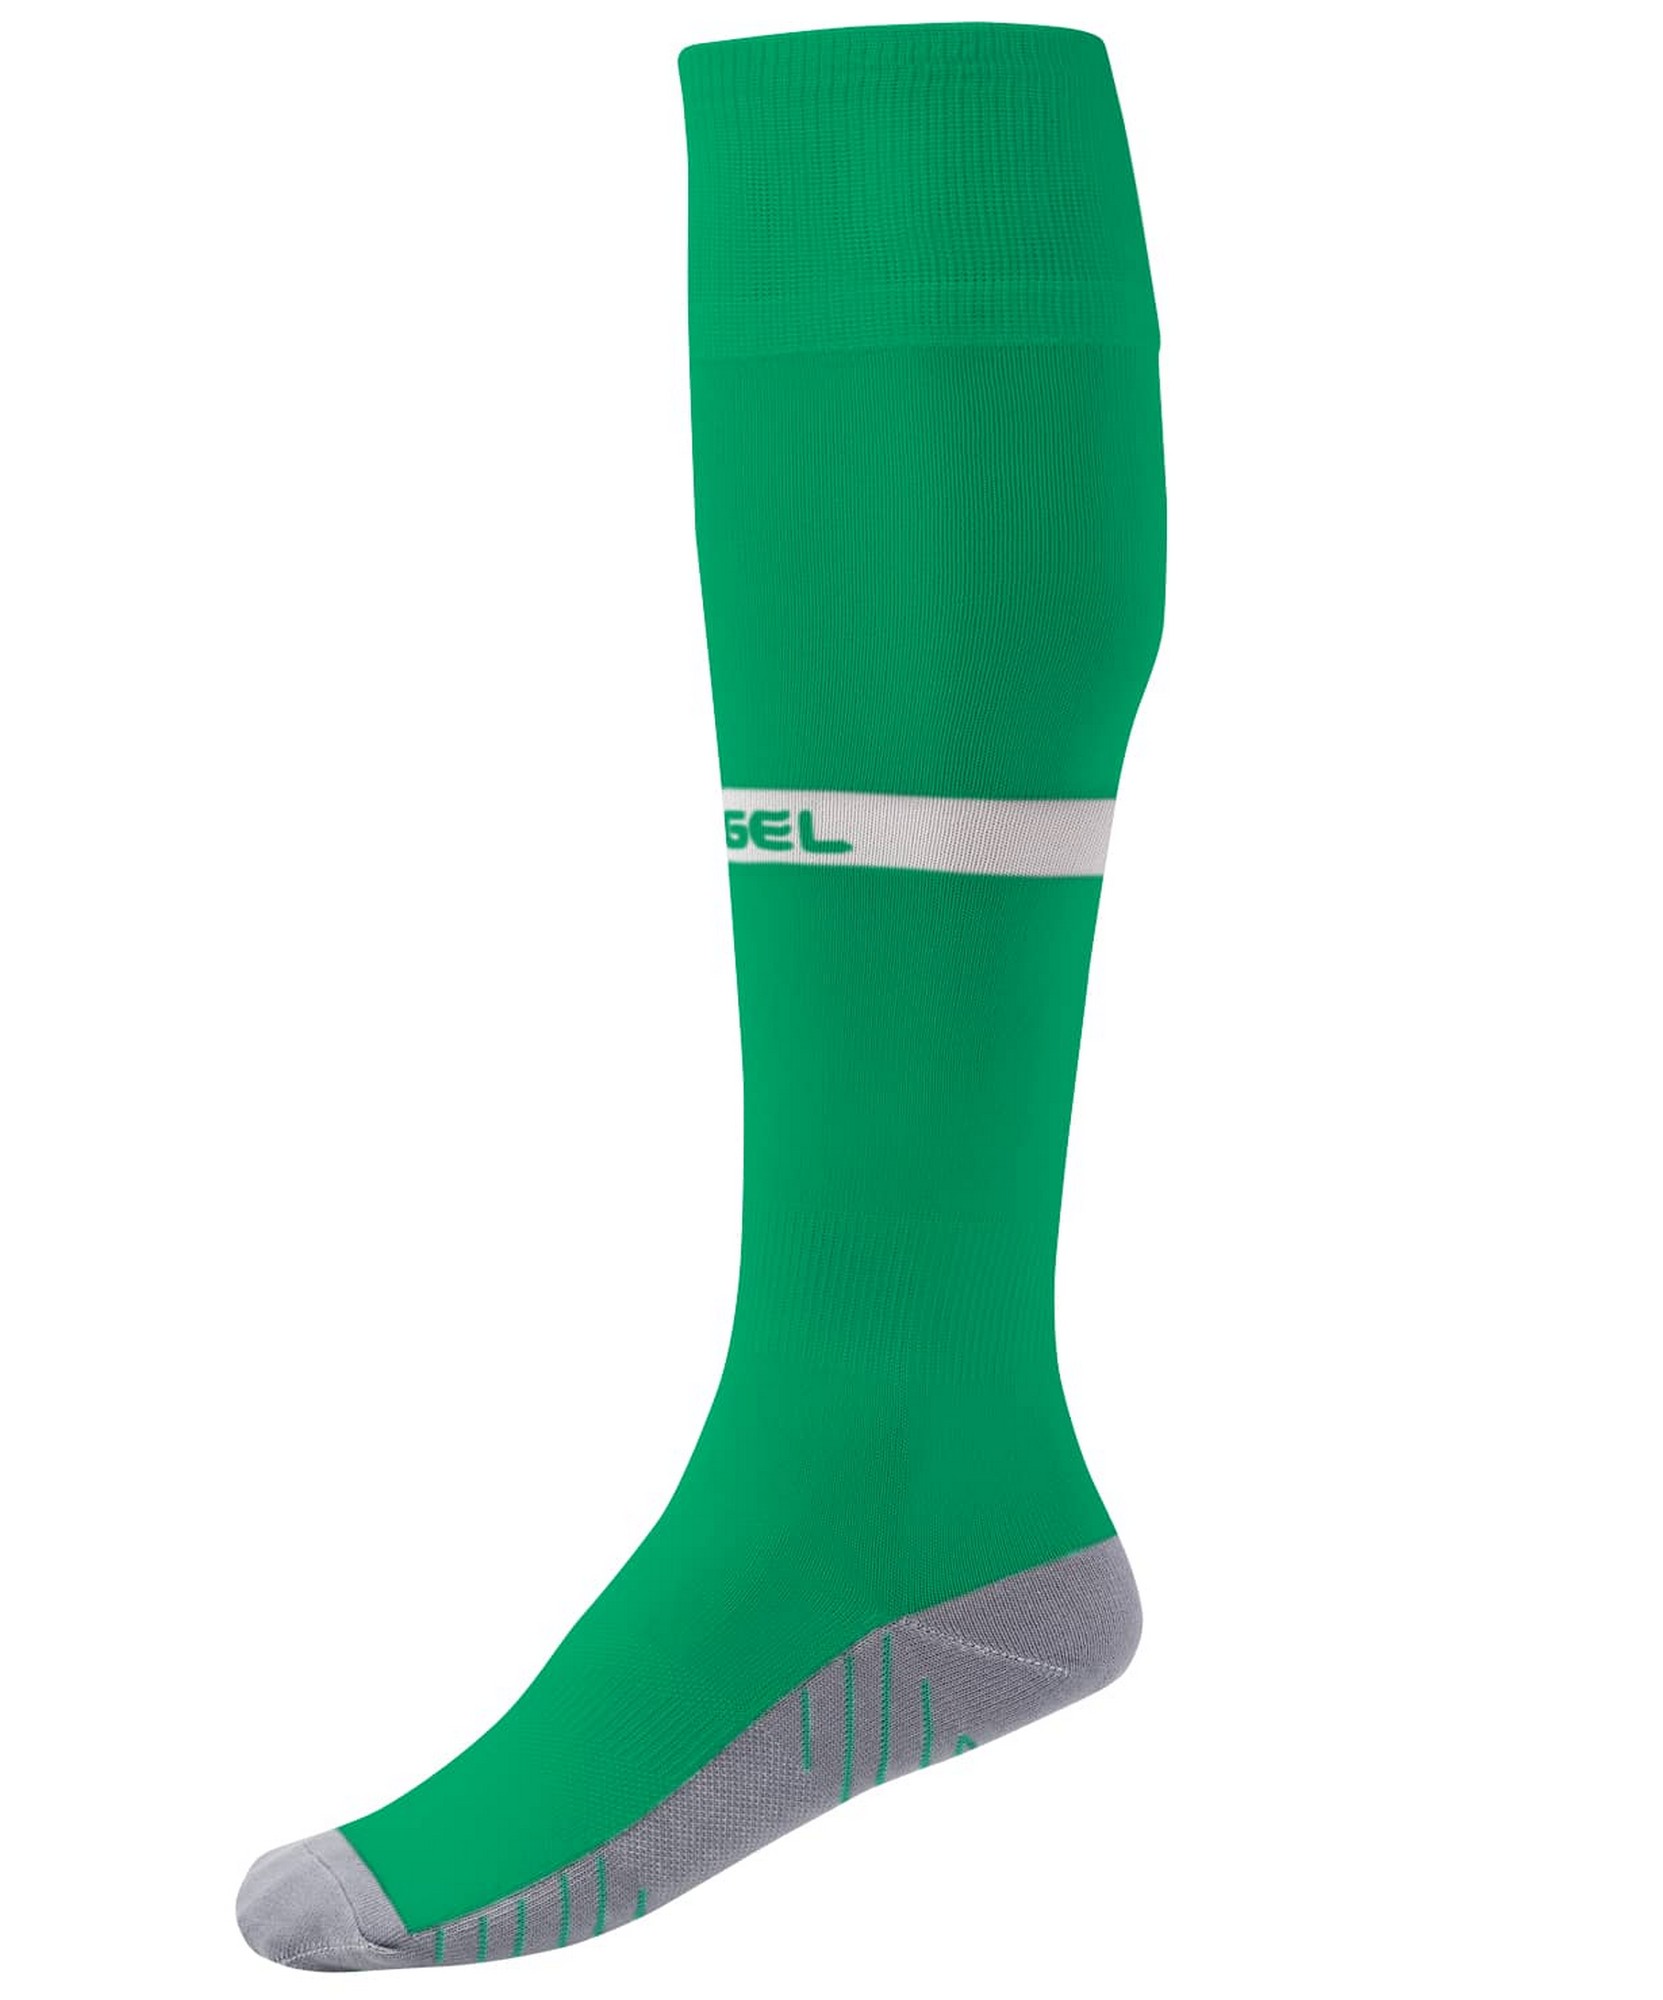 Купить Гетры футбольные Jögel Camp Advanced Socks зеленыйбелый,